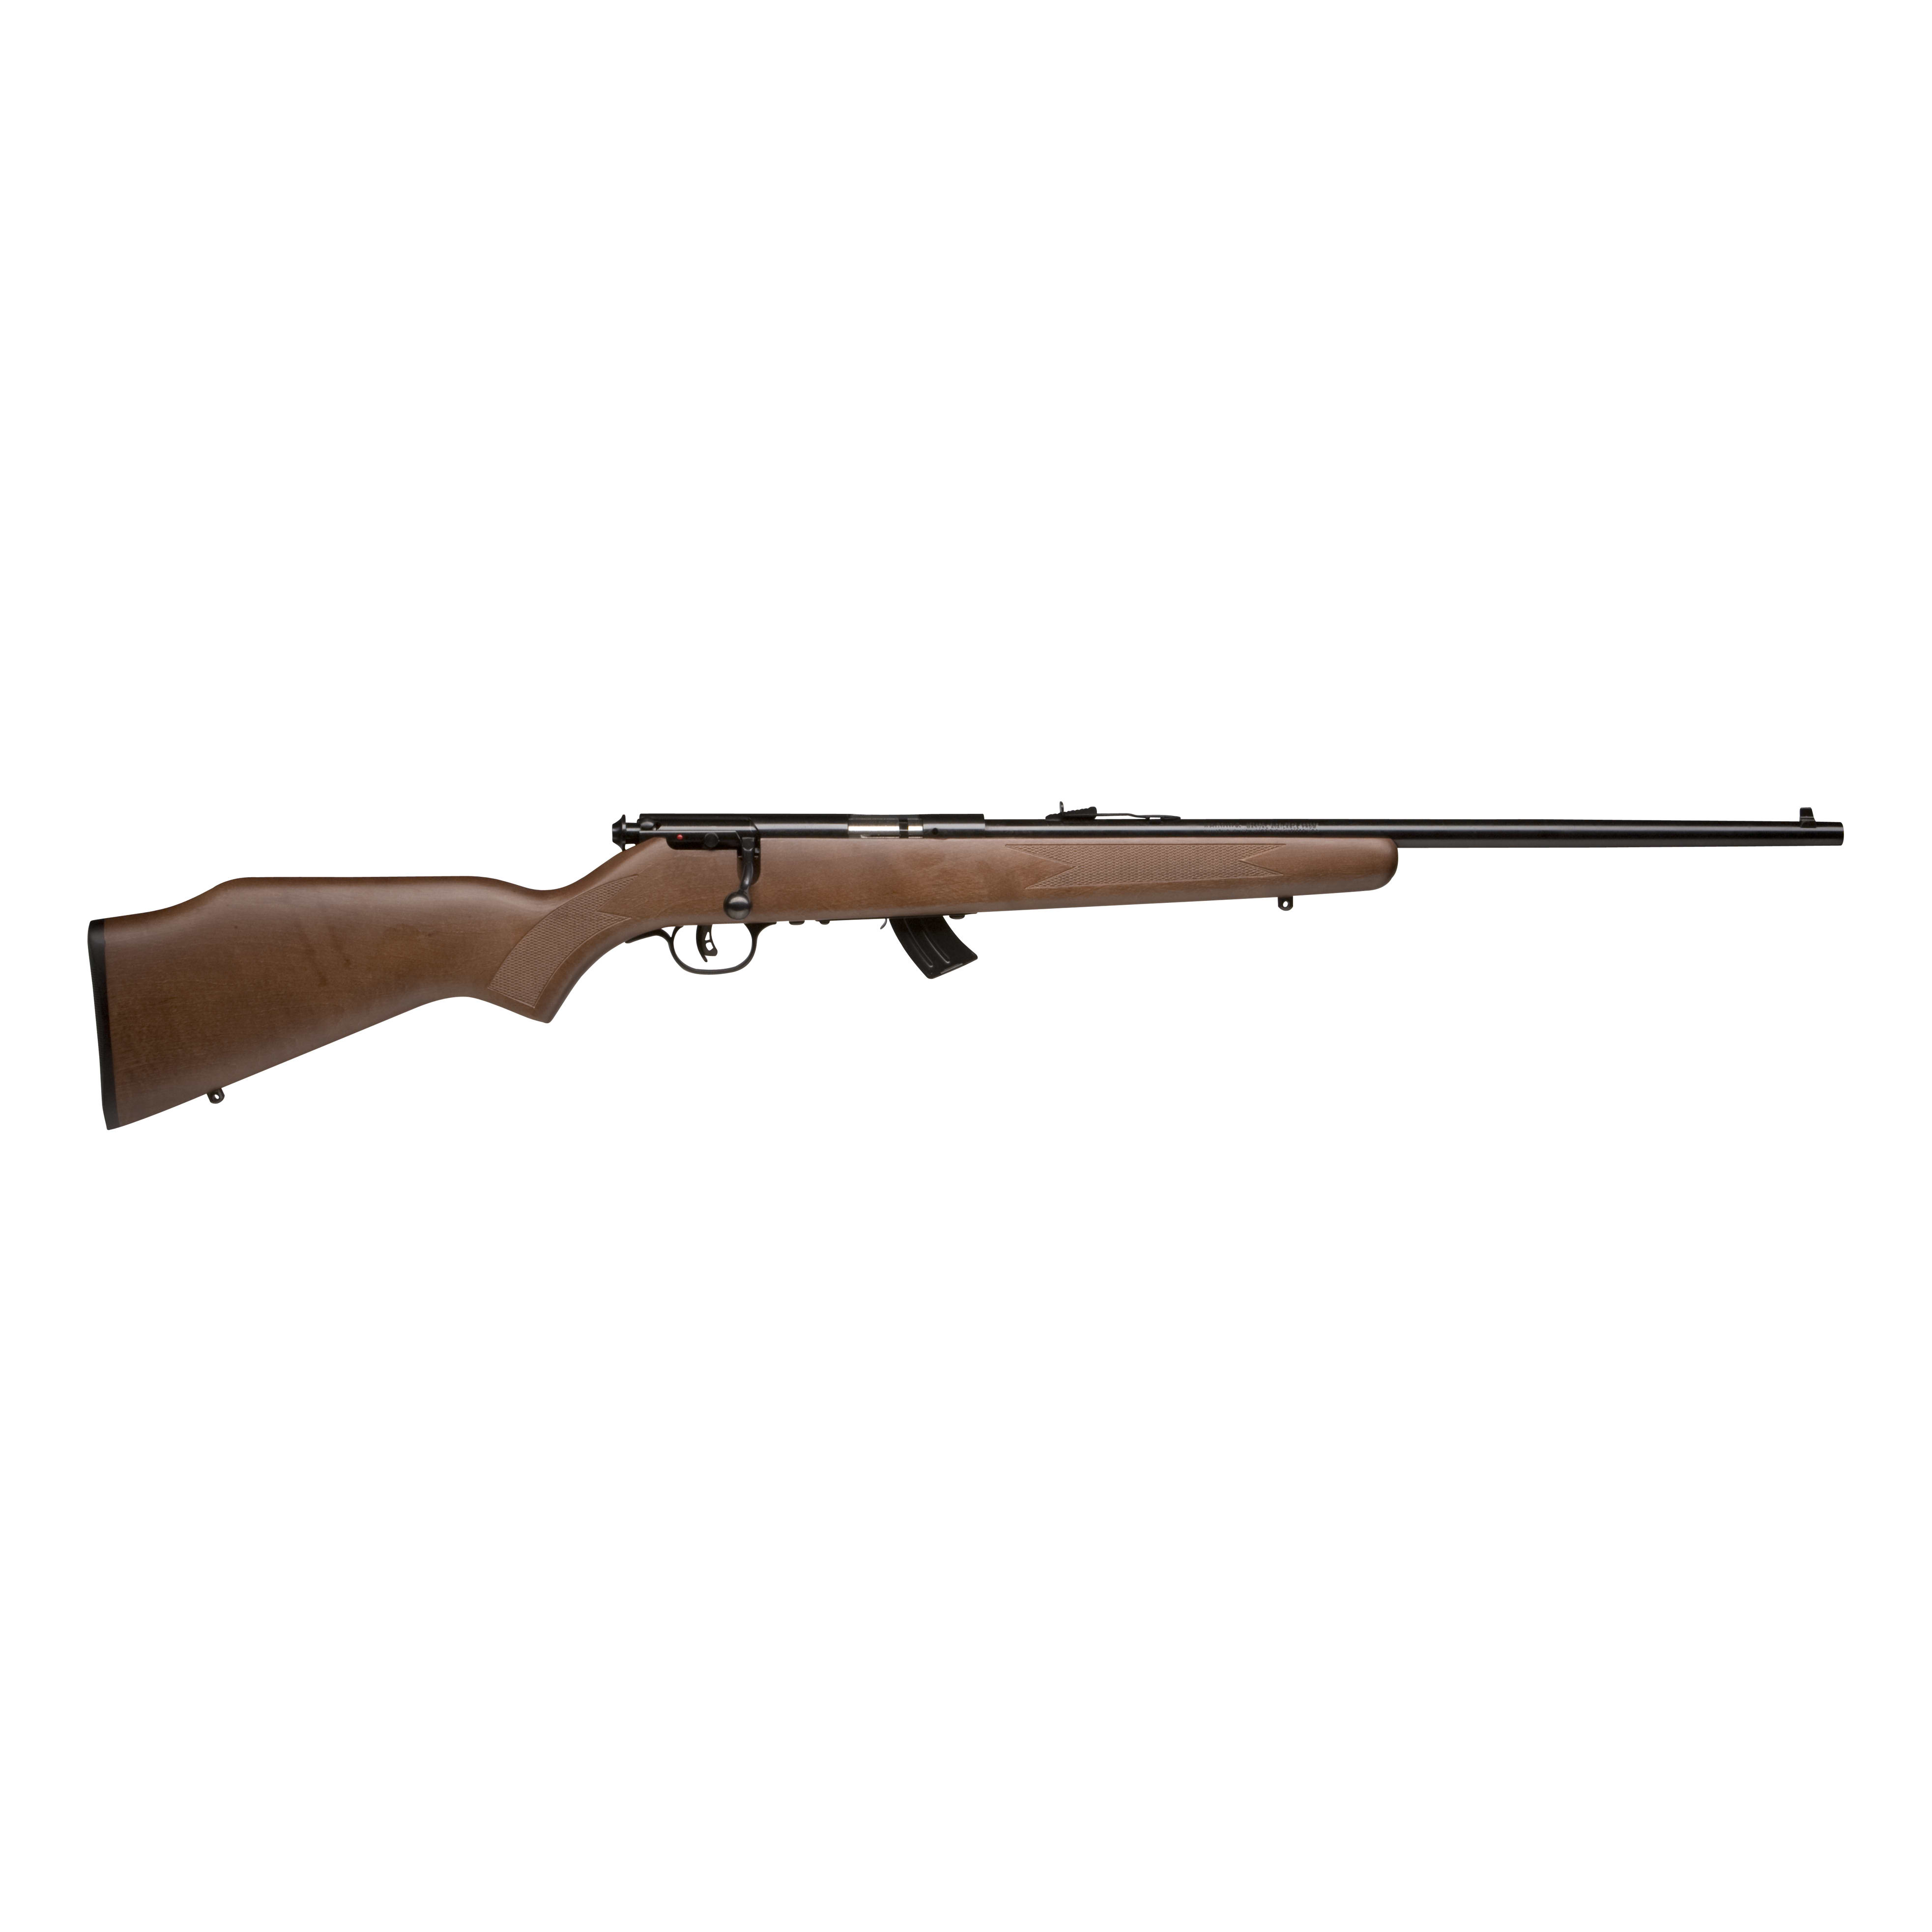 Savage 60703 Mark II GY Bolt Action Rifle 22 LR, RH, 19 in, Satin Blued, Wood Stk, 10+1 Rnd, Accu-Trigger, 0685-0640